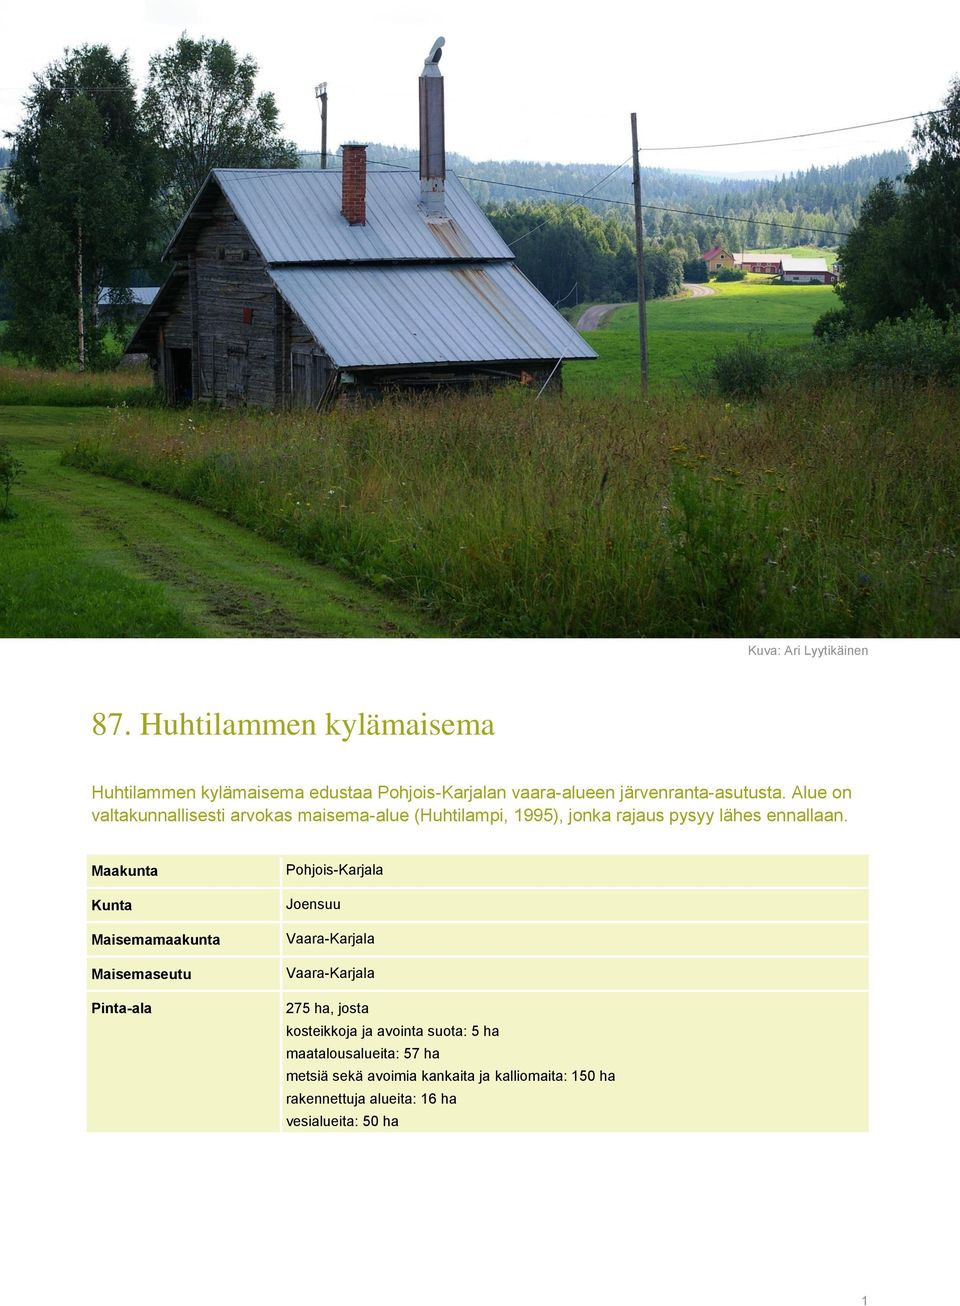 Alue on valtakunnallisesti arvokas maisema-alue (Huhtilampi, 1995), jonka rajaus pysyy lähes ennallaan.